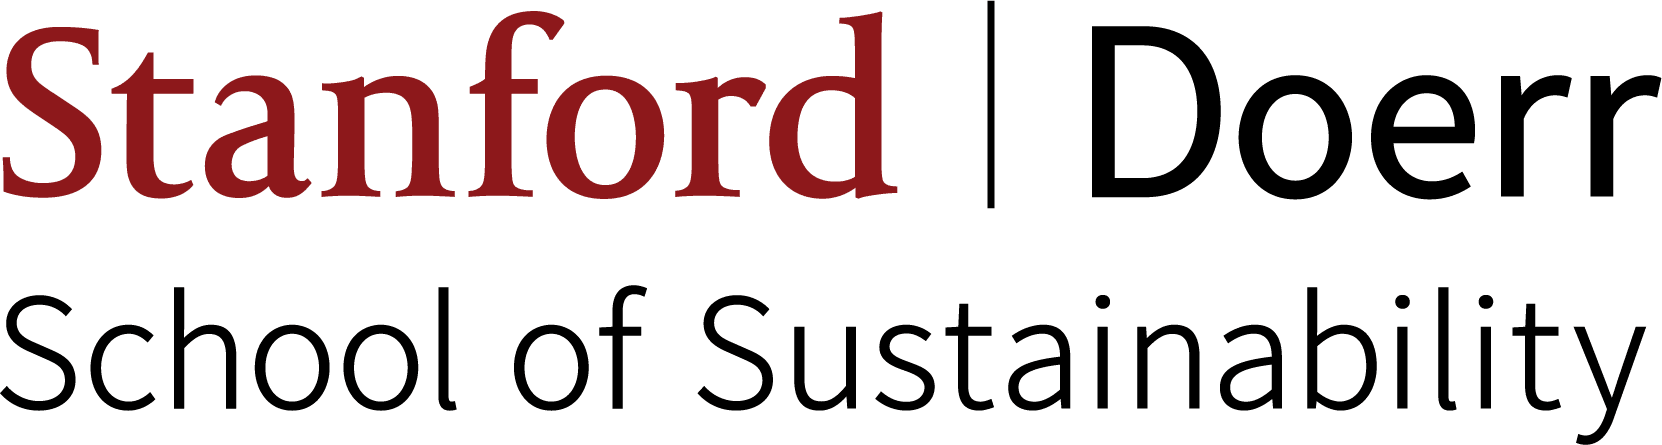 Stanford Doerr logo